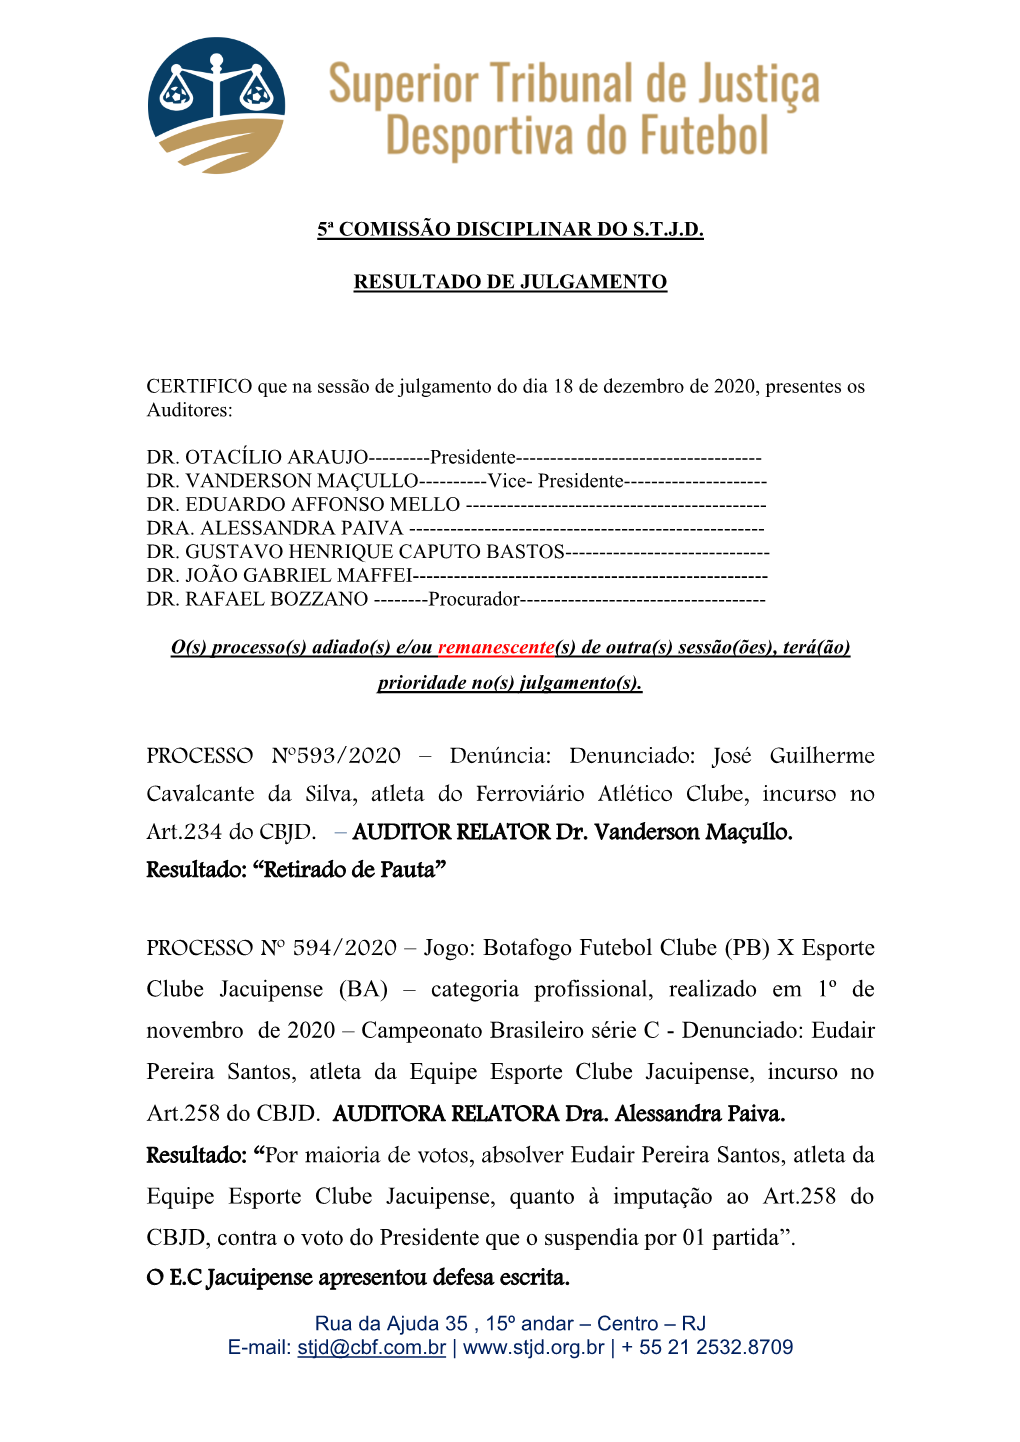 PROCESSO Nº593/2020 – Denúncia: Denunciado: José Guilherme Cavalcante Da Silva, Atleta Do Ferroviário Atlético Clube, Incurso No Art.234 Do CBJD